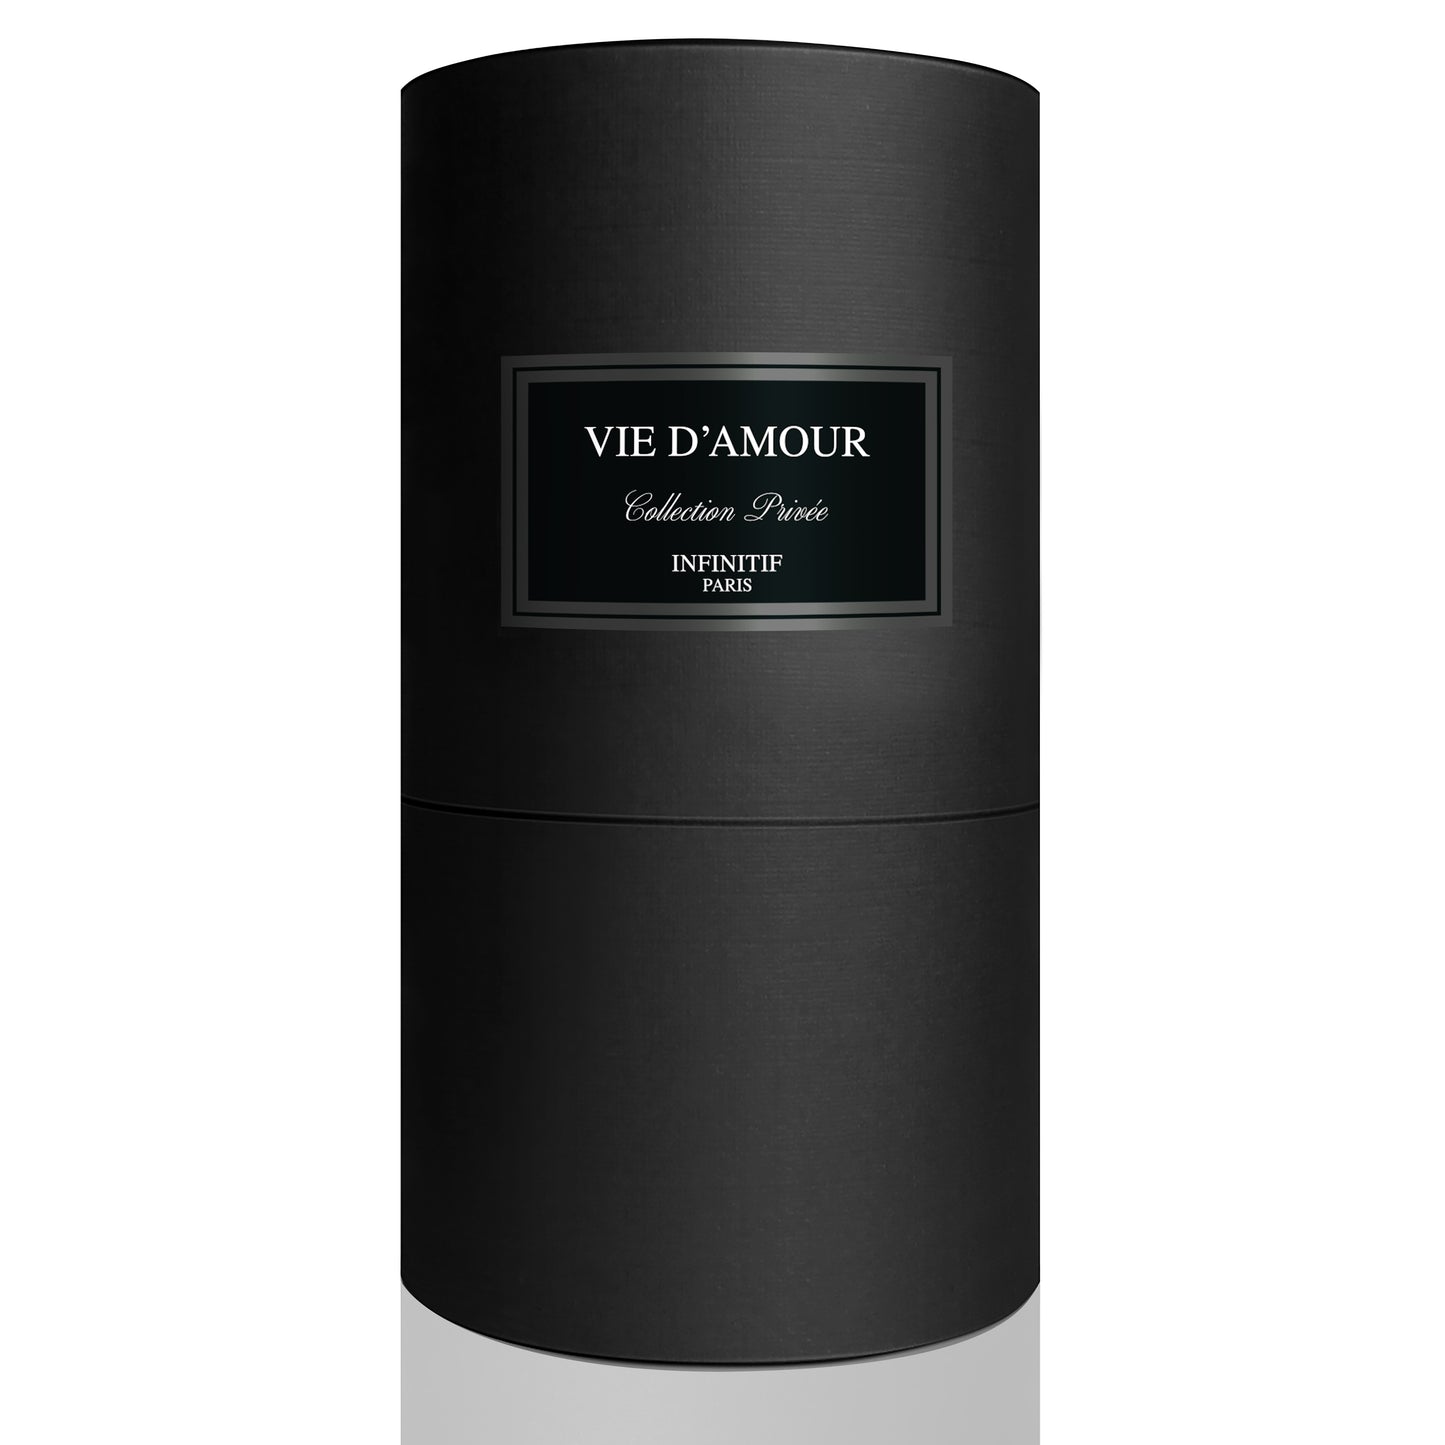 Parfum Vie D'Amour - Collection Privée Infinitif 50 ml, femei